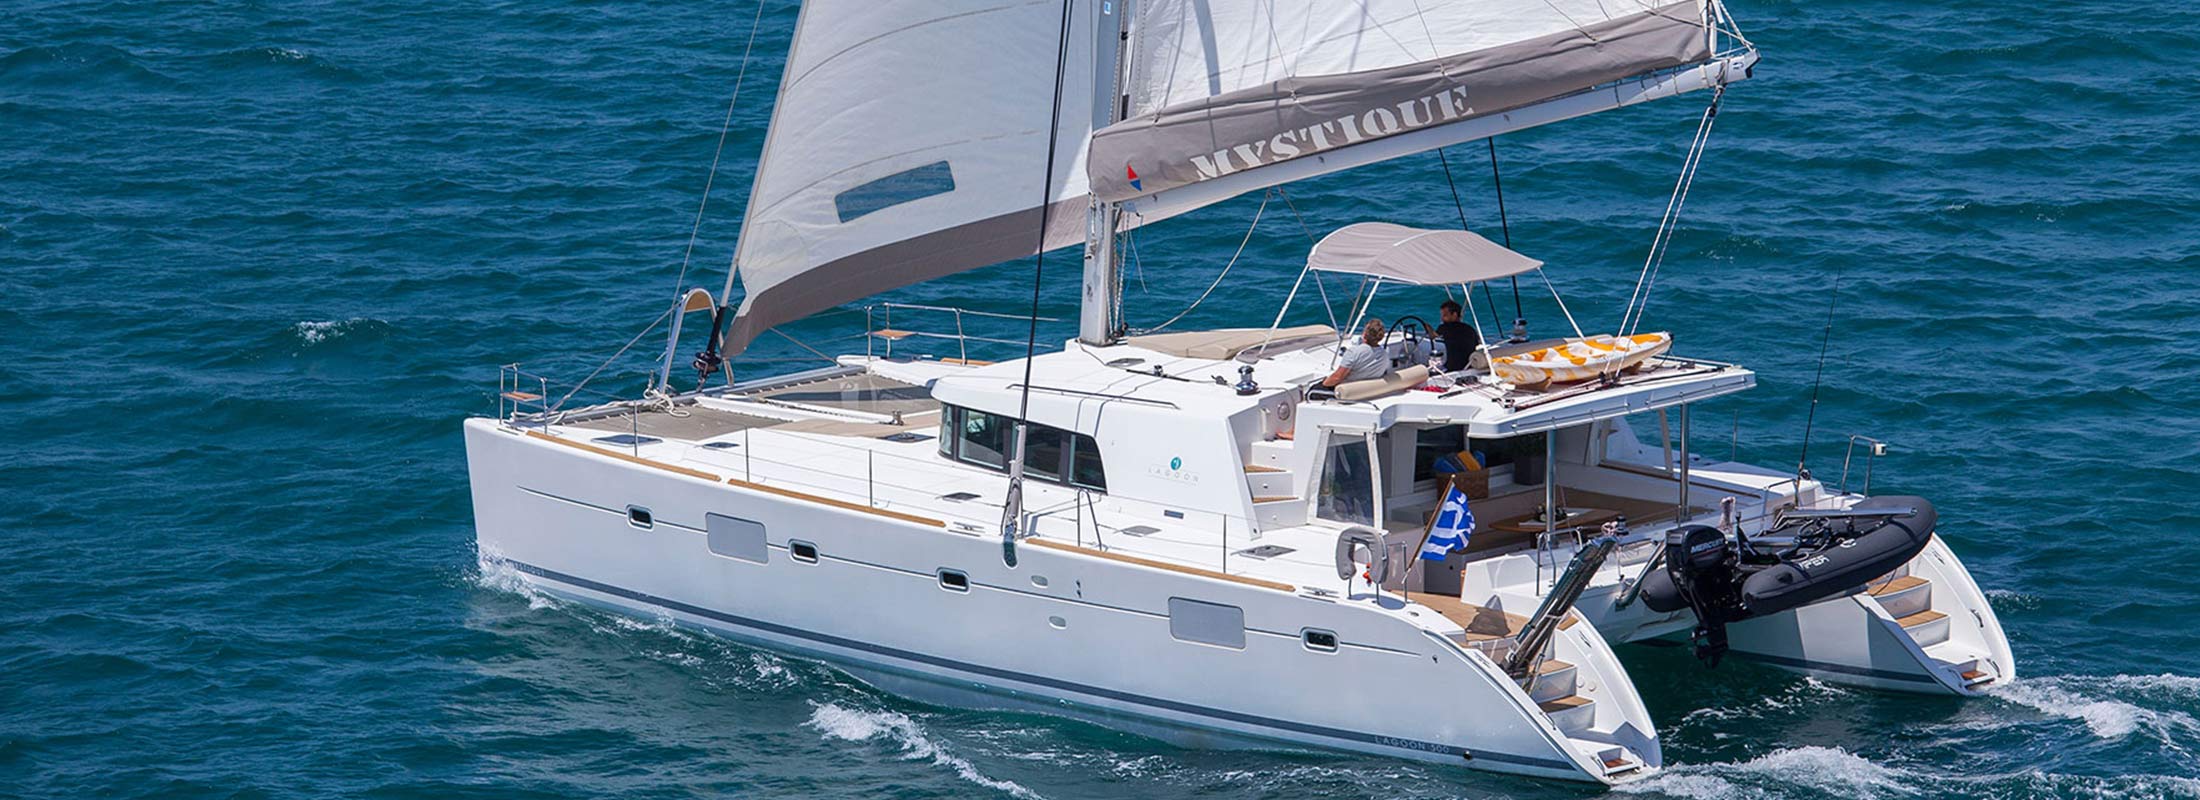 Mystique Sailing Yacht for Charter Mediterranean slider 1